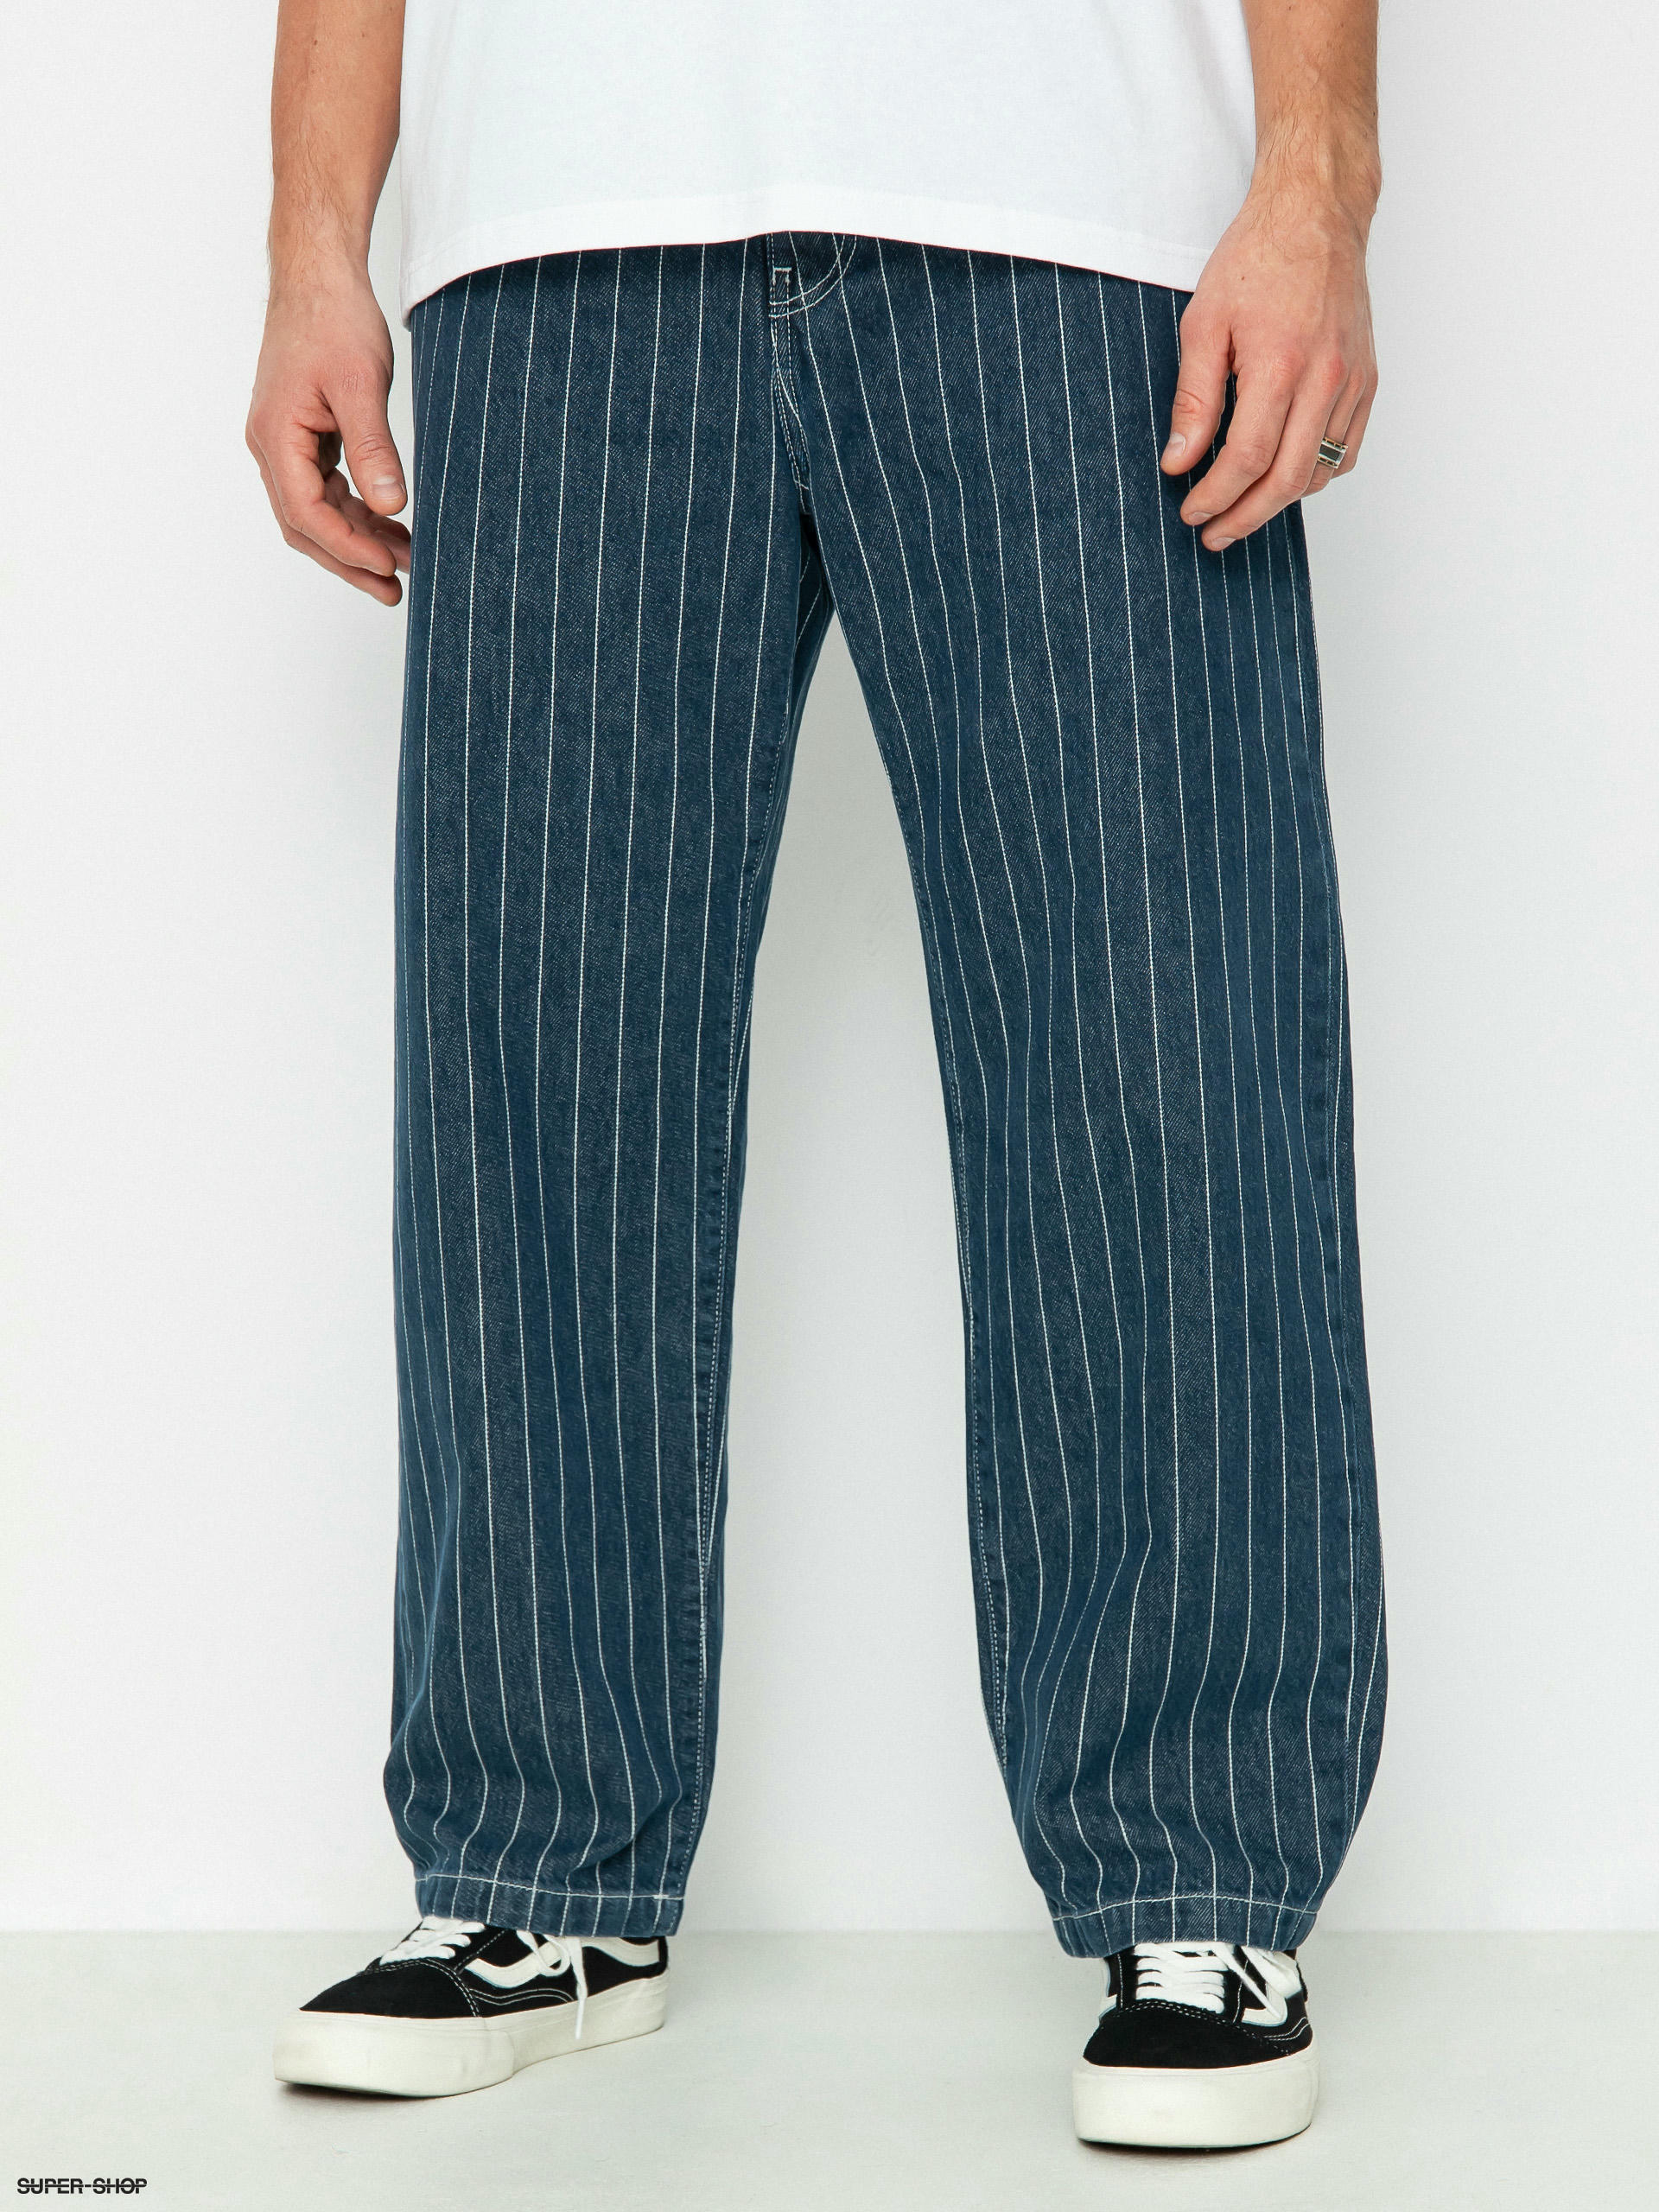 Blue Carhartt Pants for Men